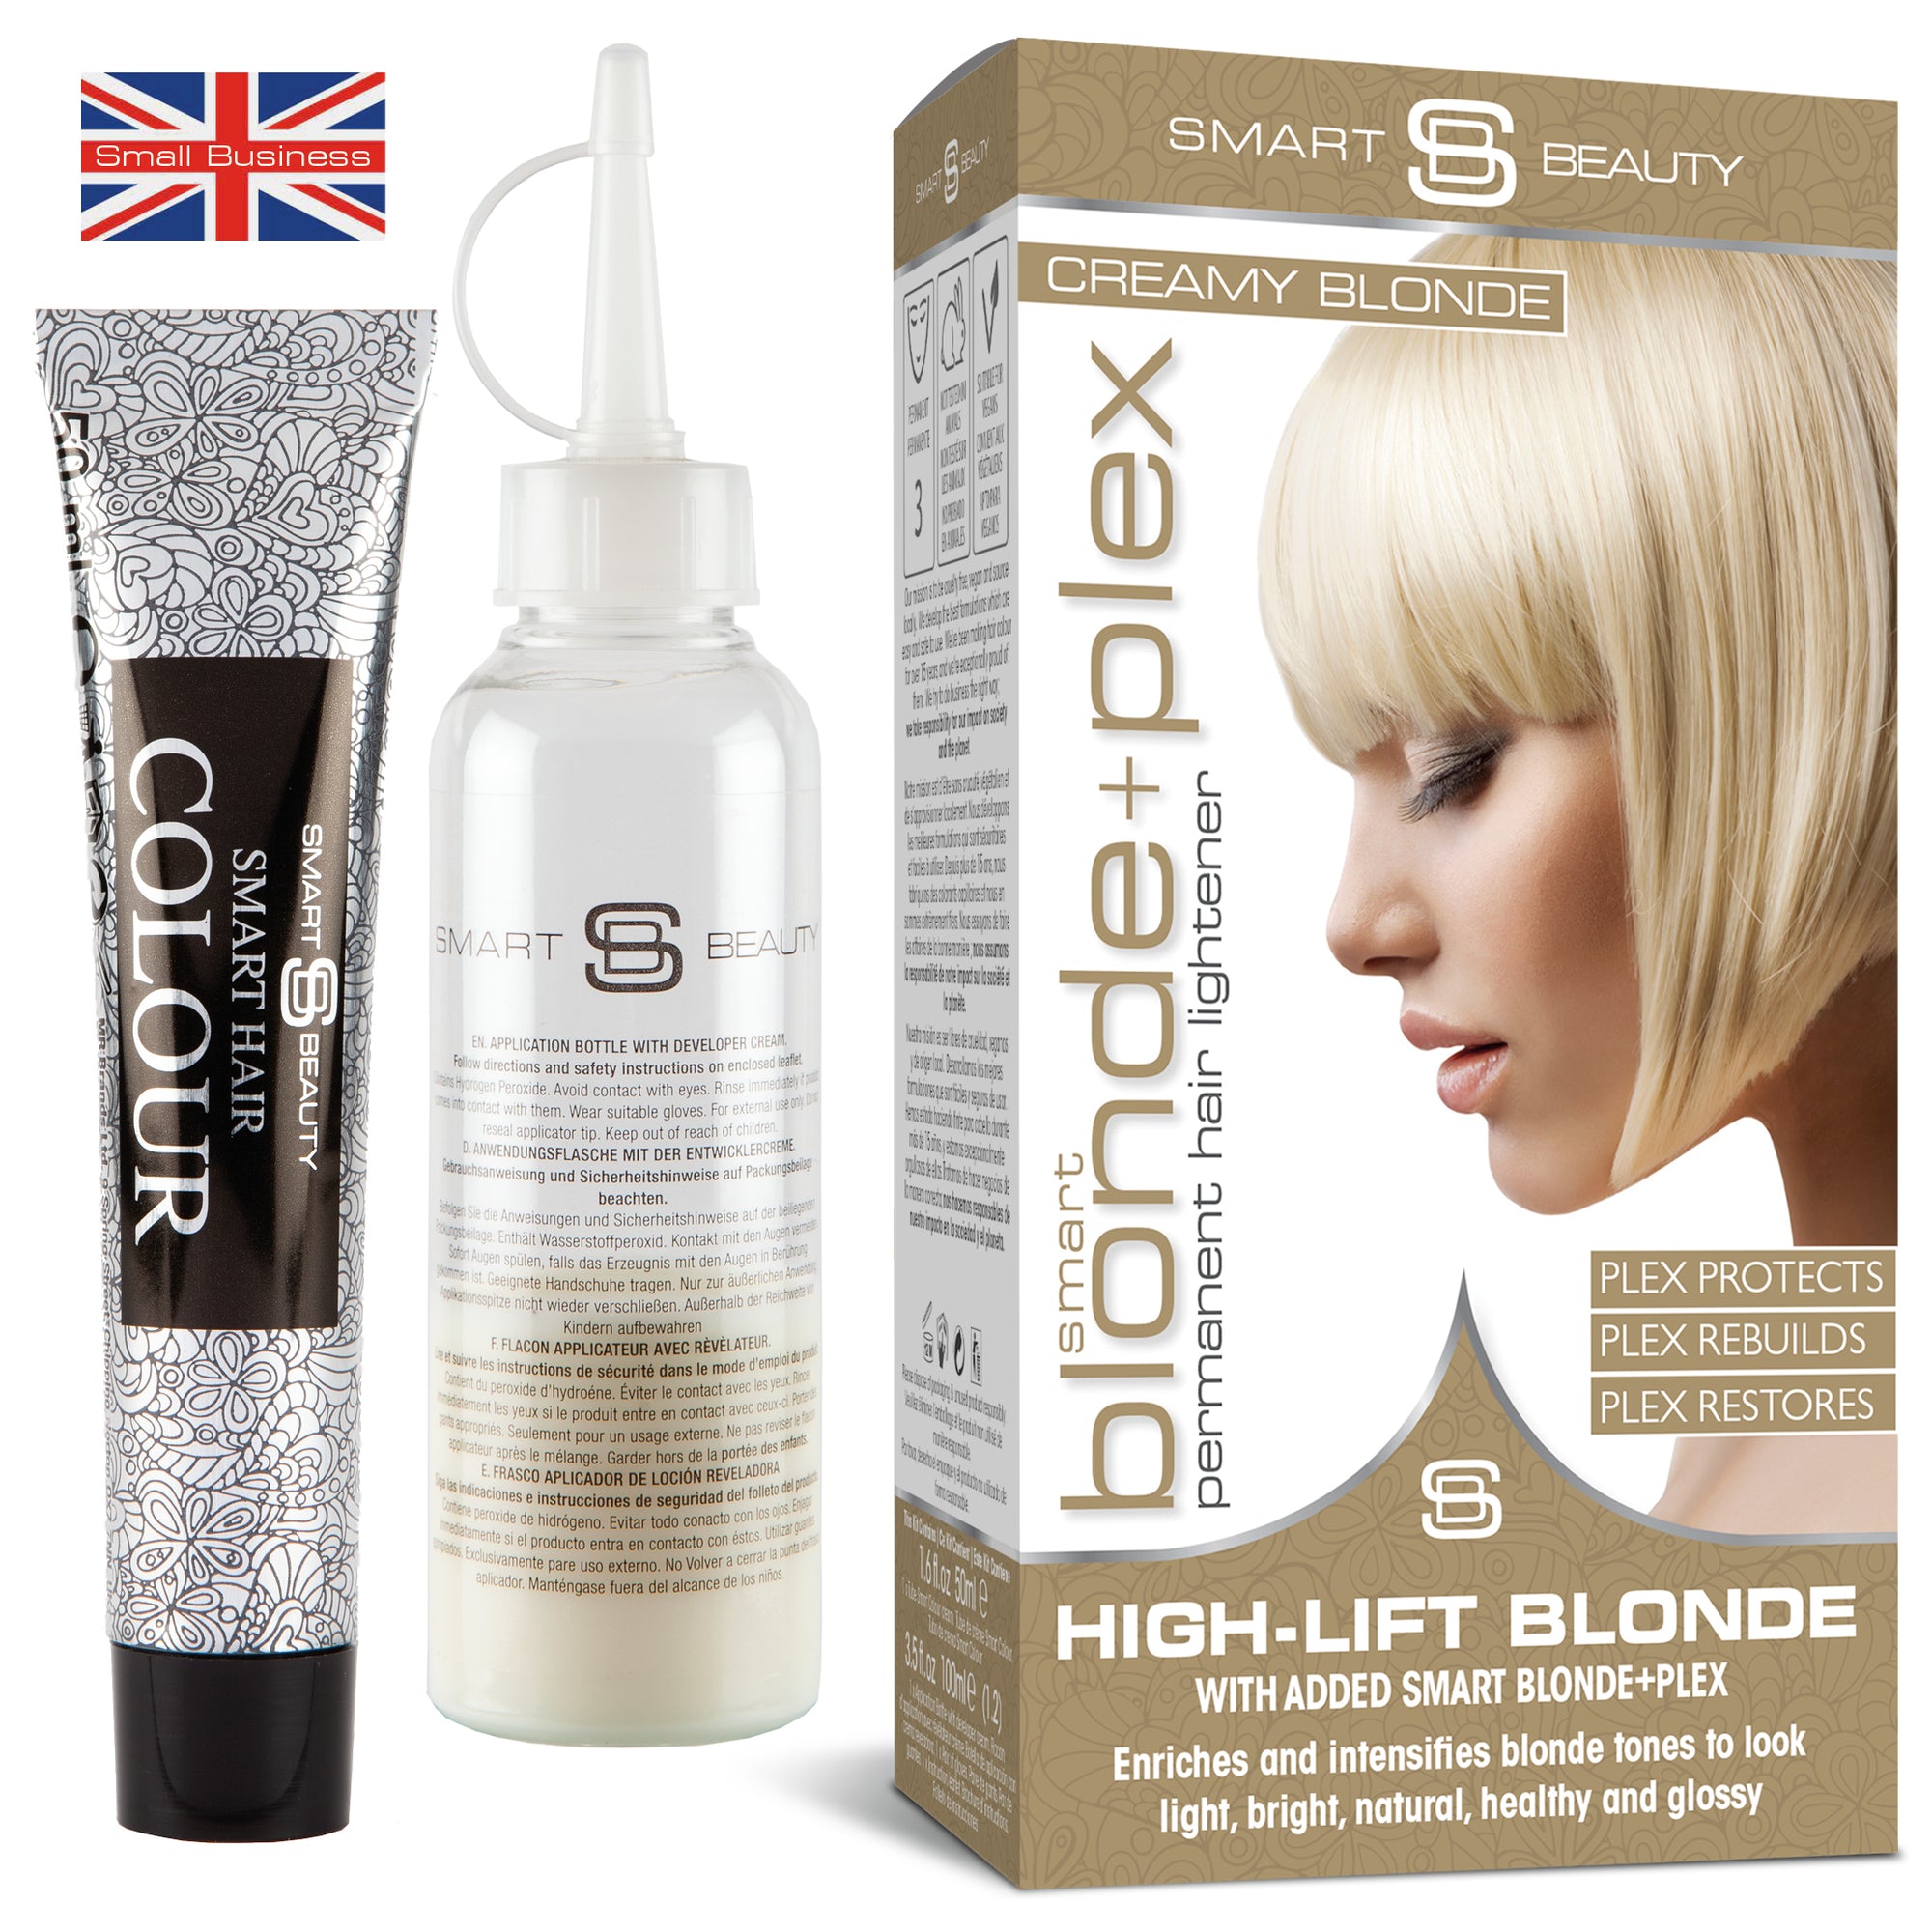 Blonde+plex | Summer Blonde Permanent Hair Dye